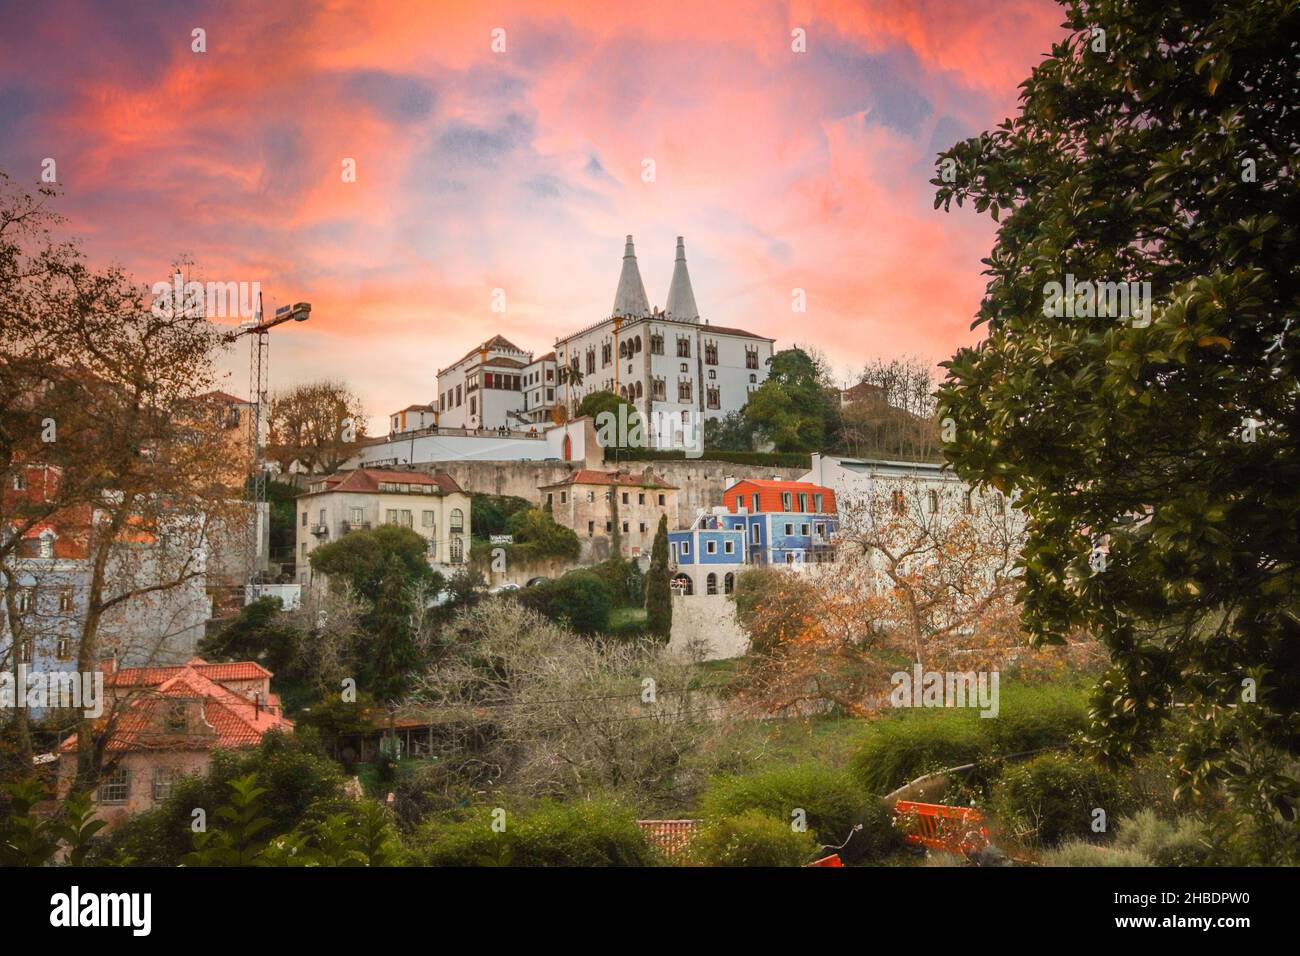 Das portugiesische Dorf Sintra, ein UNESCO-Weltkulturerbe. Sintra National Palace im Hintergrund. Sintra, Portugal. Stockfoto